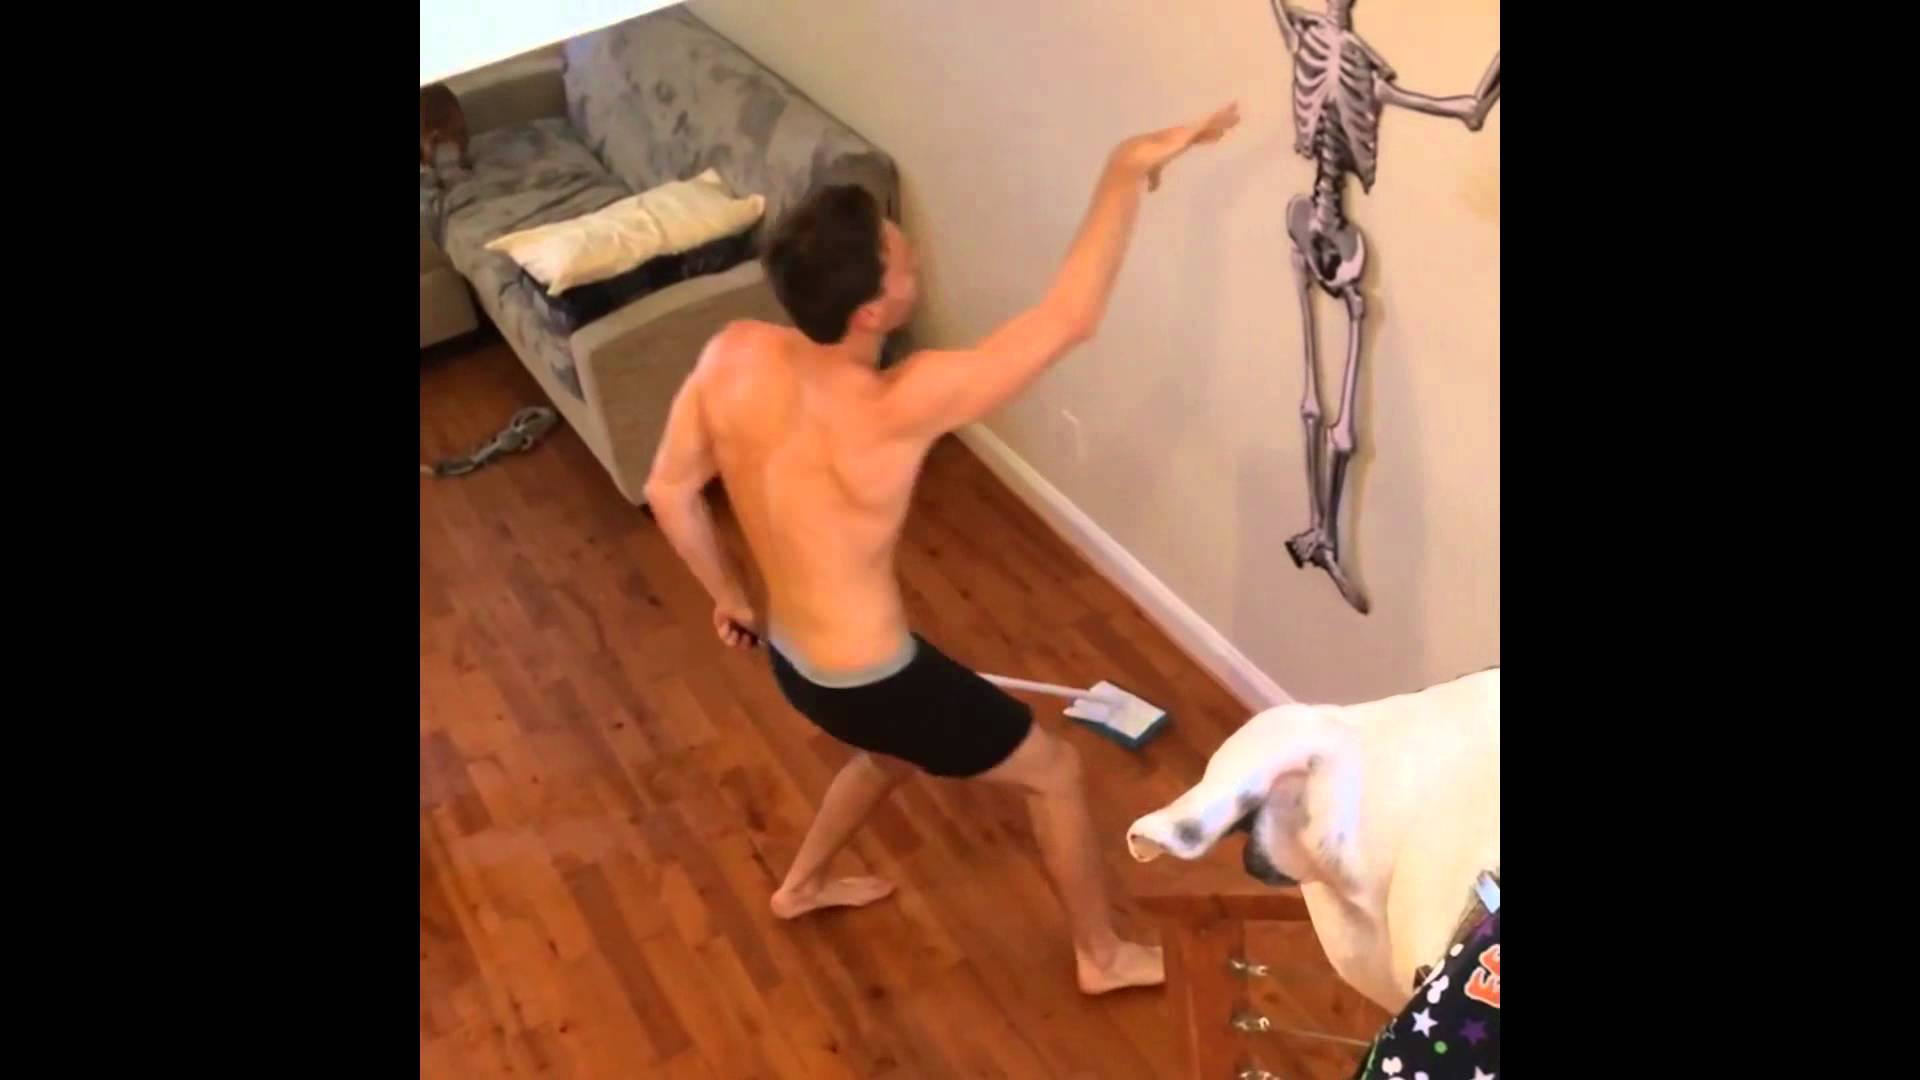 Boxerben, takarítás közben táncoló fiú az internet új sztárja! – videó